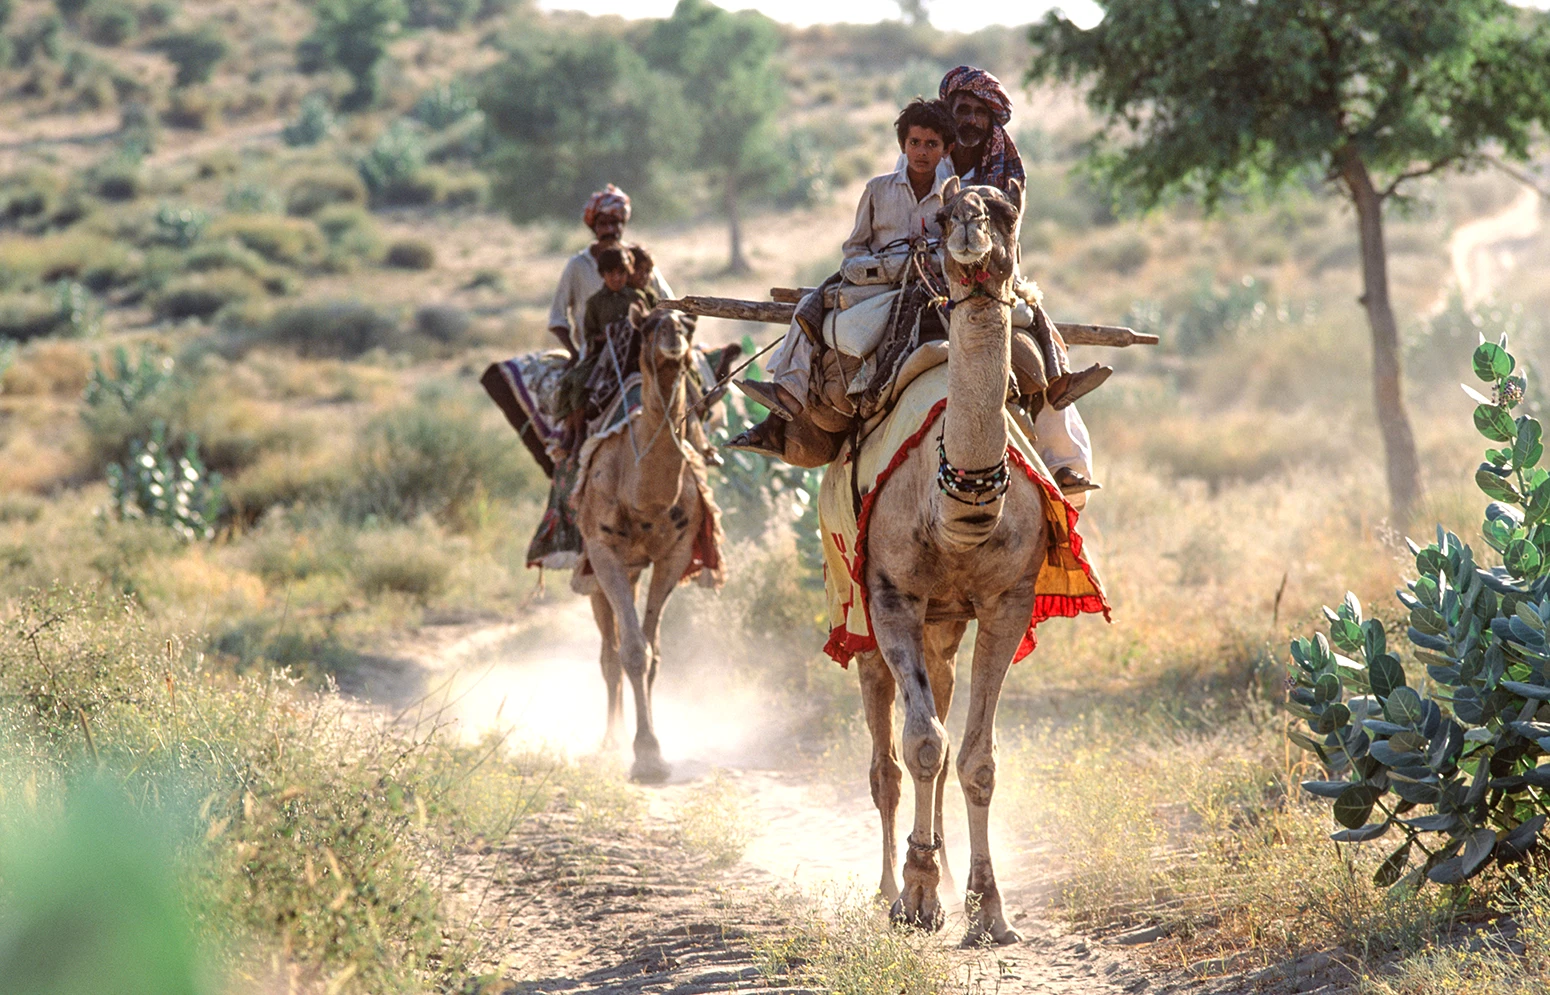 Thari nómadas en camello. Desierto de Thar, Pakistán.